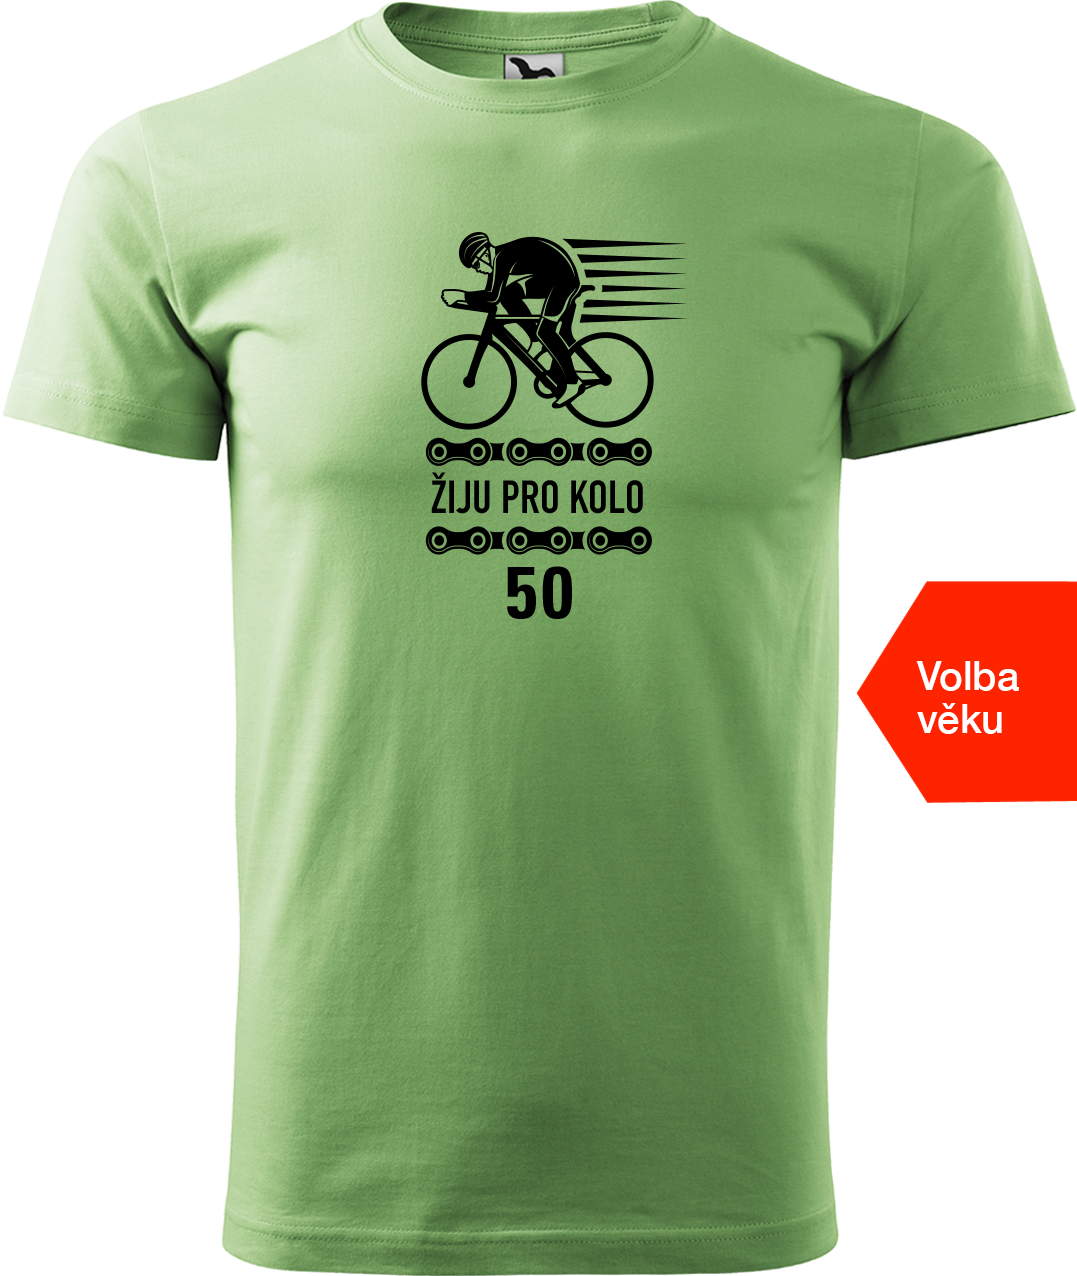 Pánské tričko s kolem a věkem - Žiju pro kolo Velikost: 3XL, Barva: Trávově zelená (39)